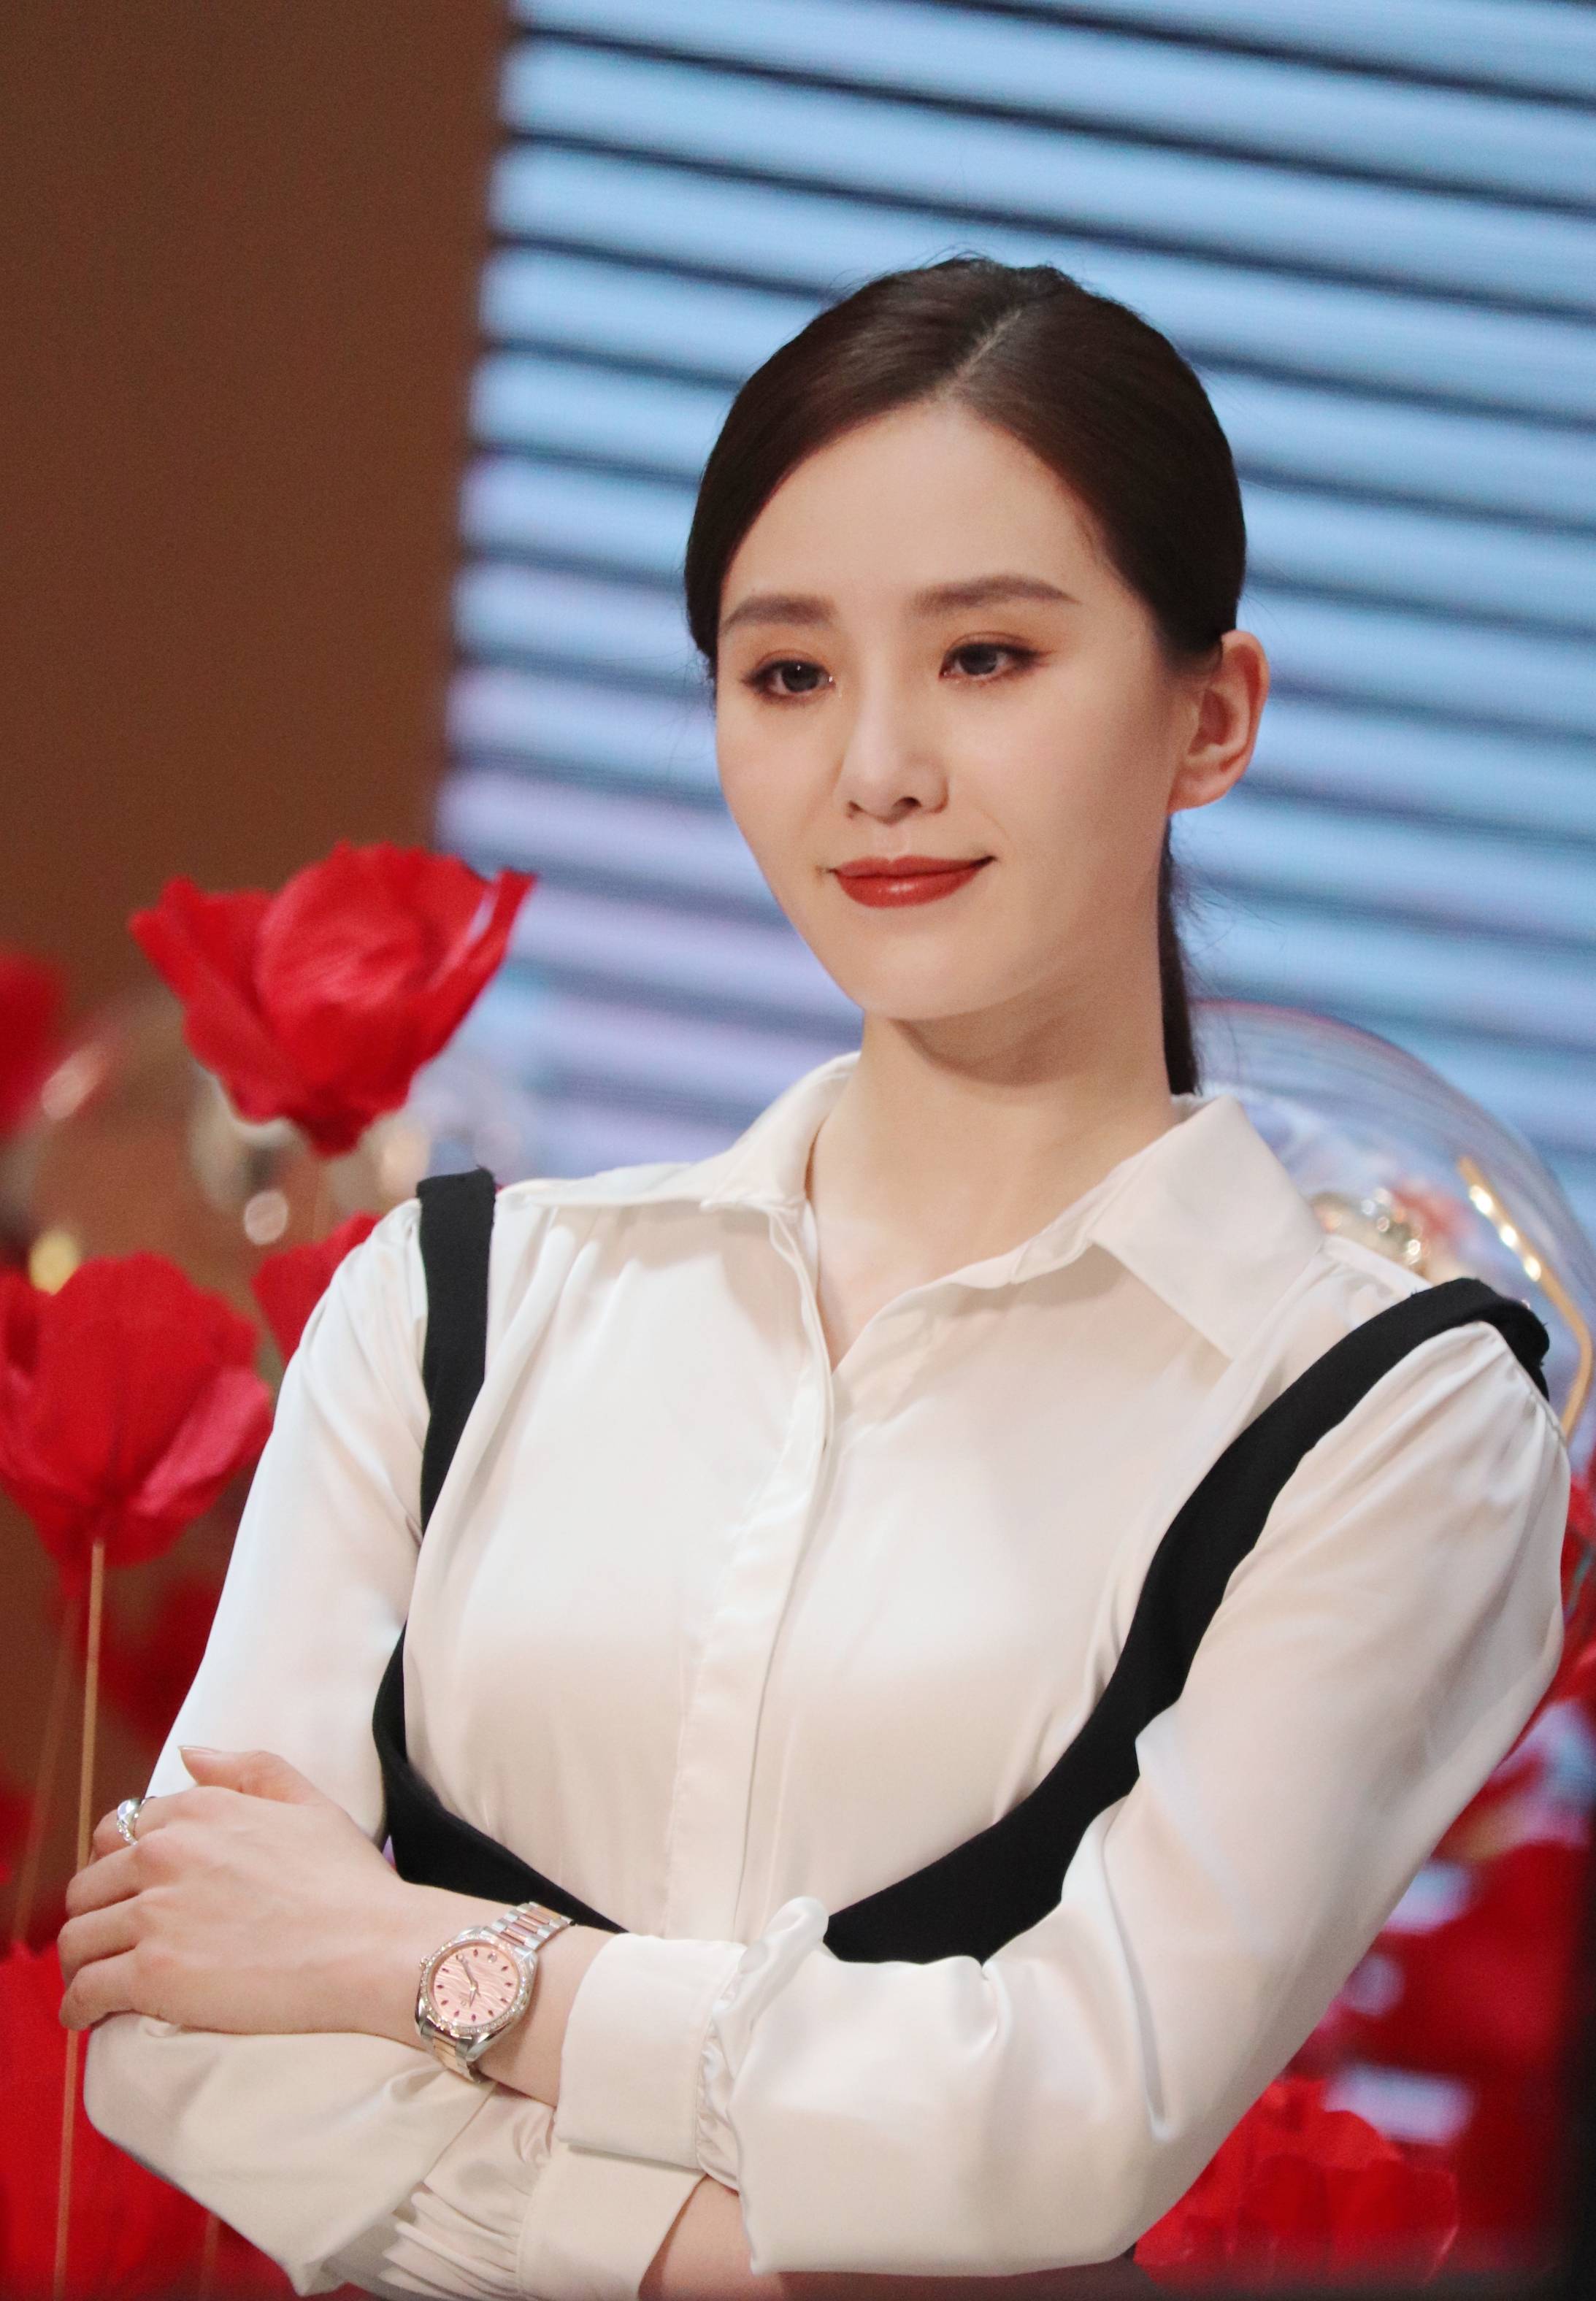 2021年7月6日,上海,刘诗诗出席腕表活动,她身穿白衬衫搭配黑色背带